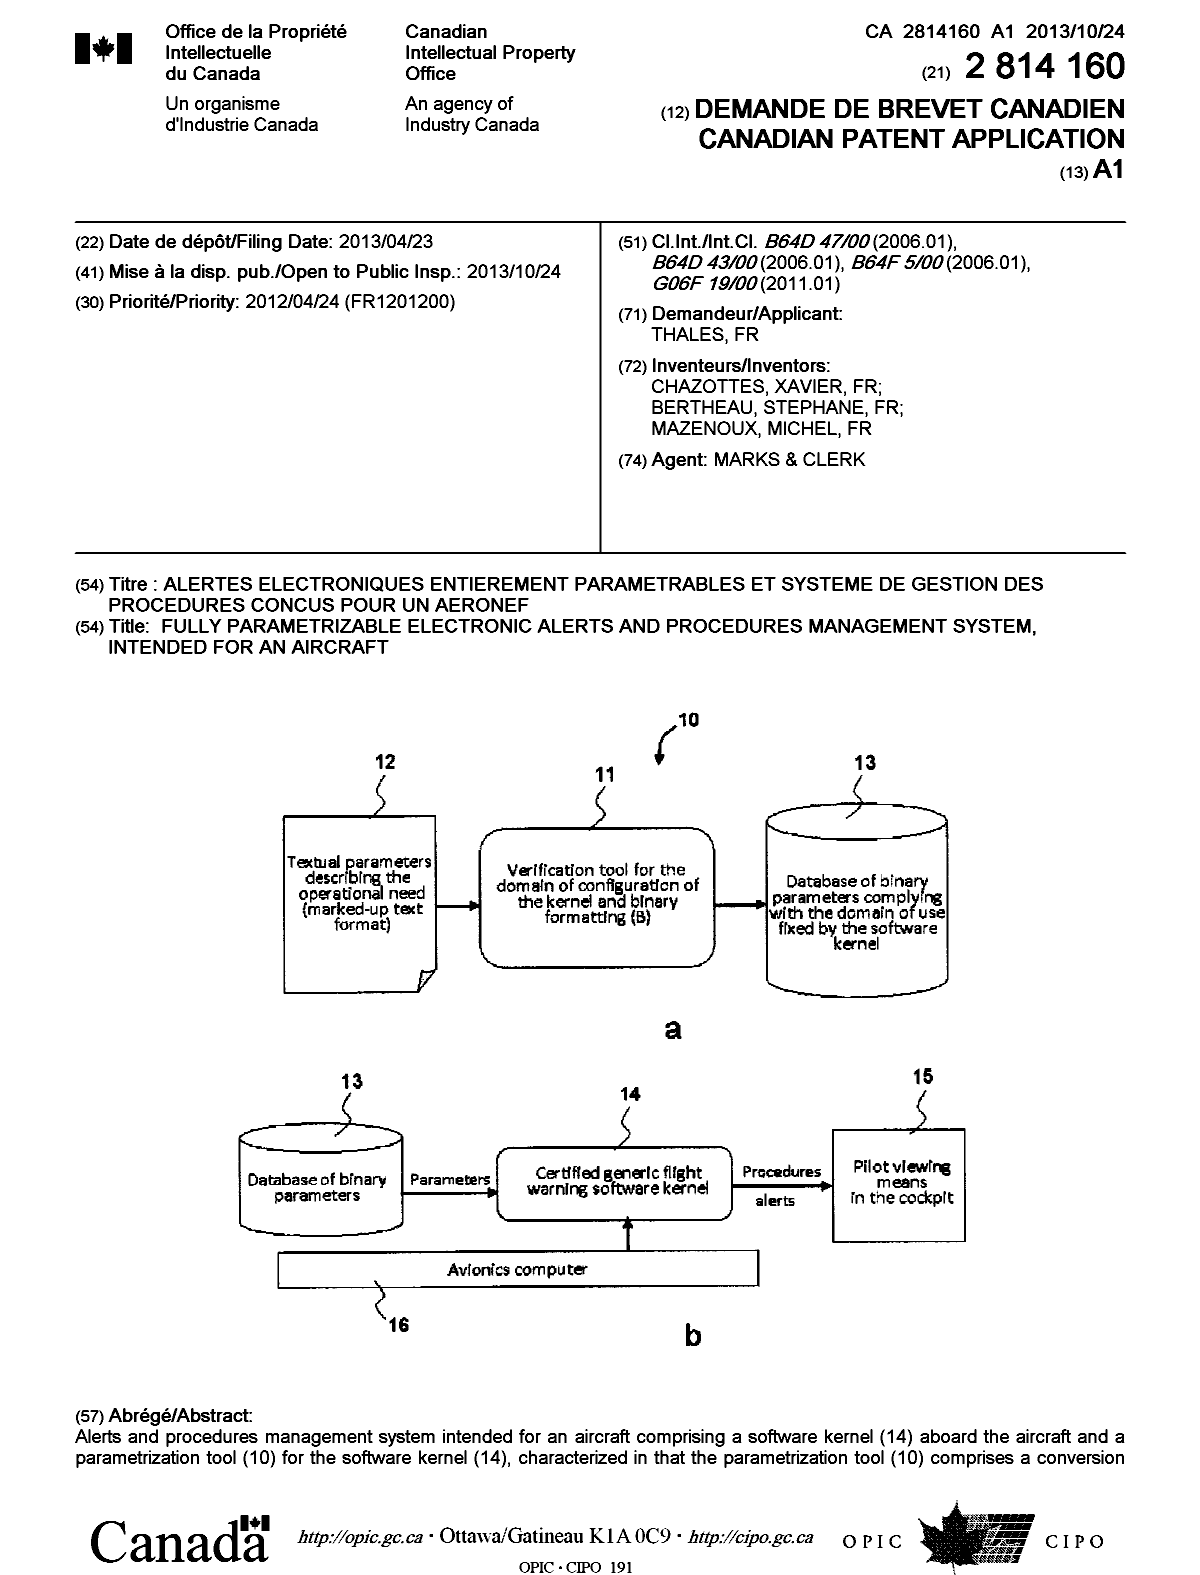 Document de brevet canadien 2814160. Page couverture 20131227. Image 1 de 2